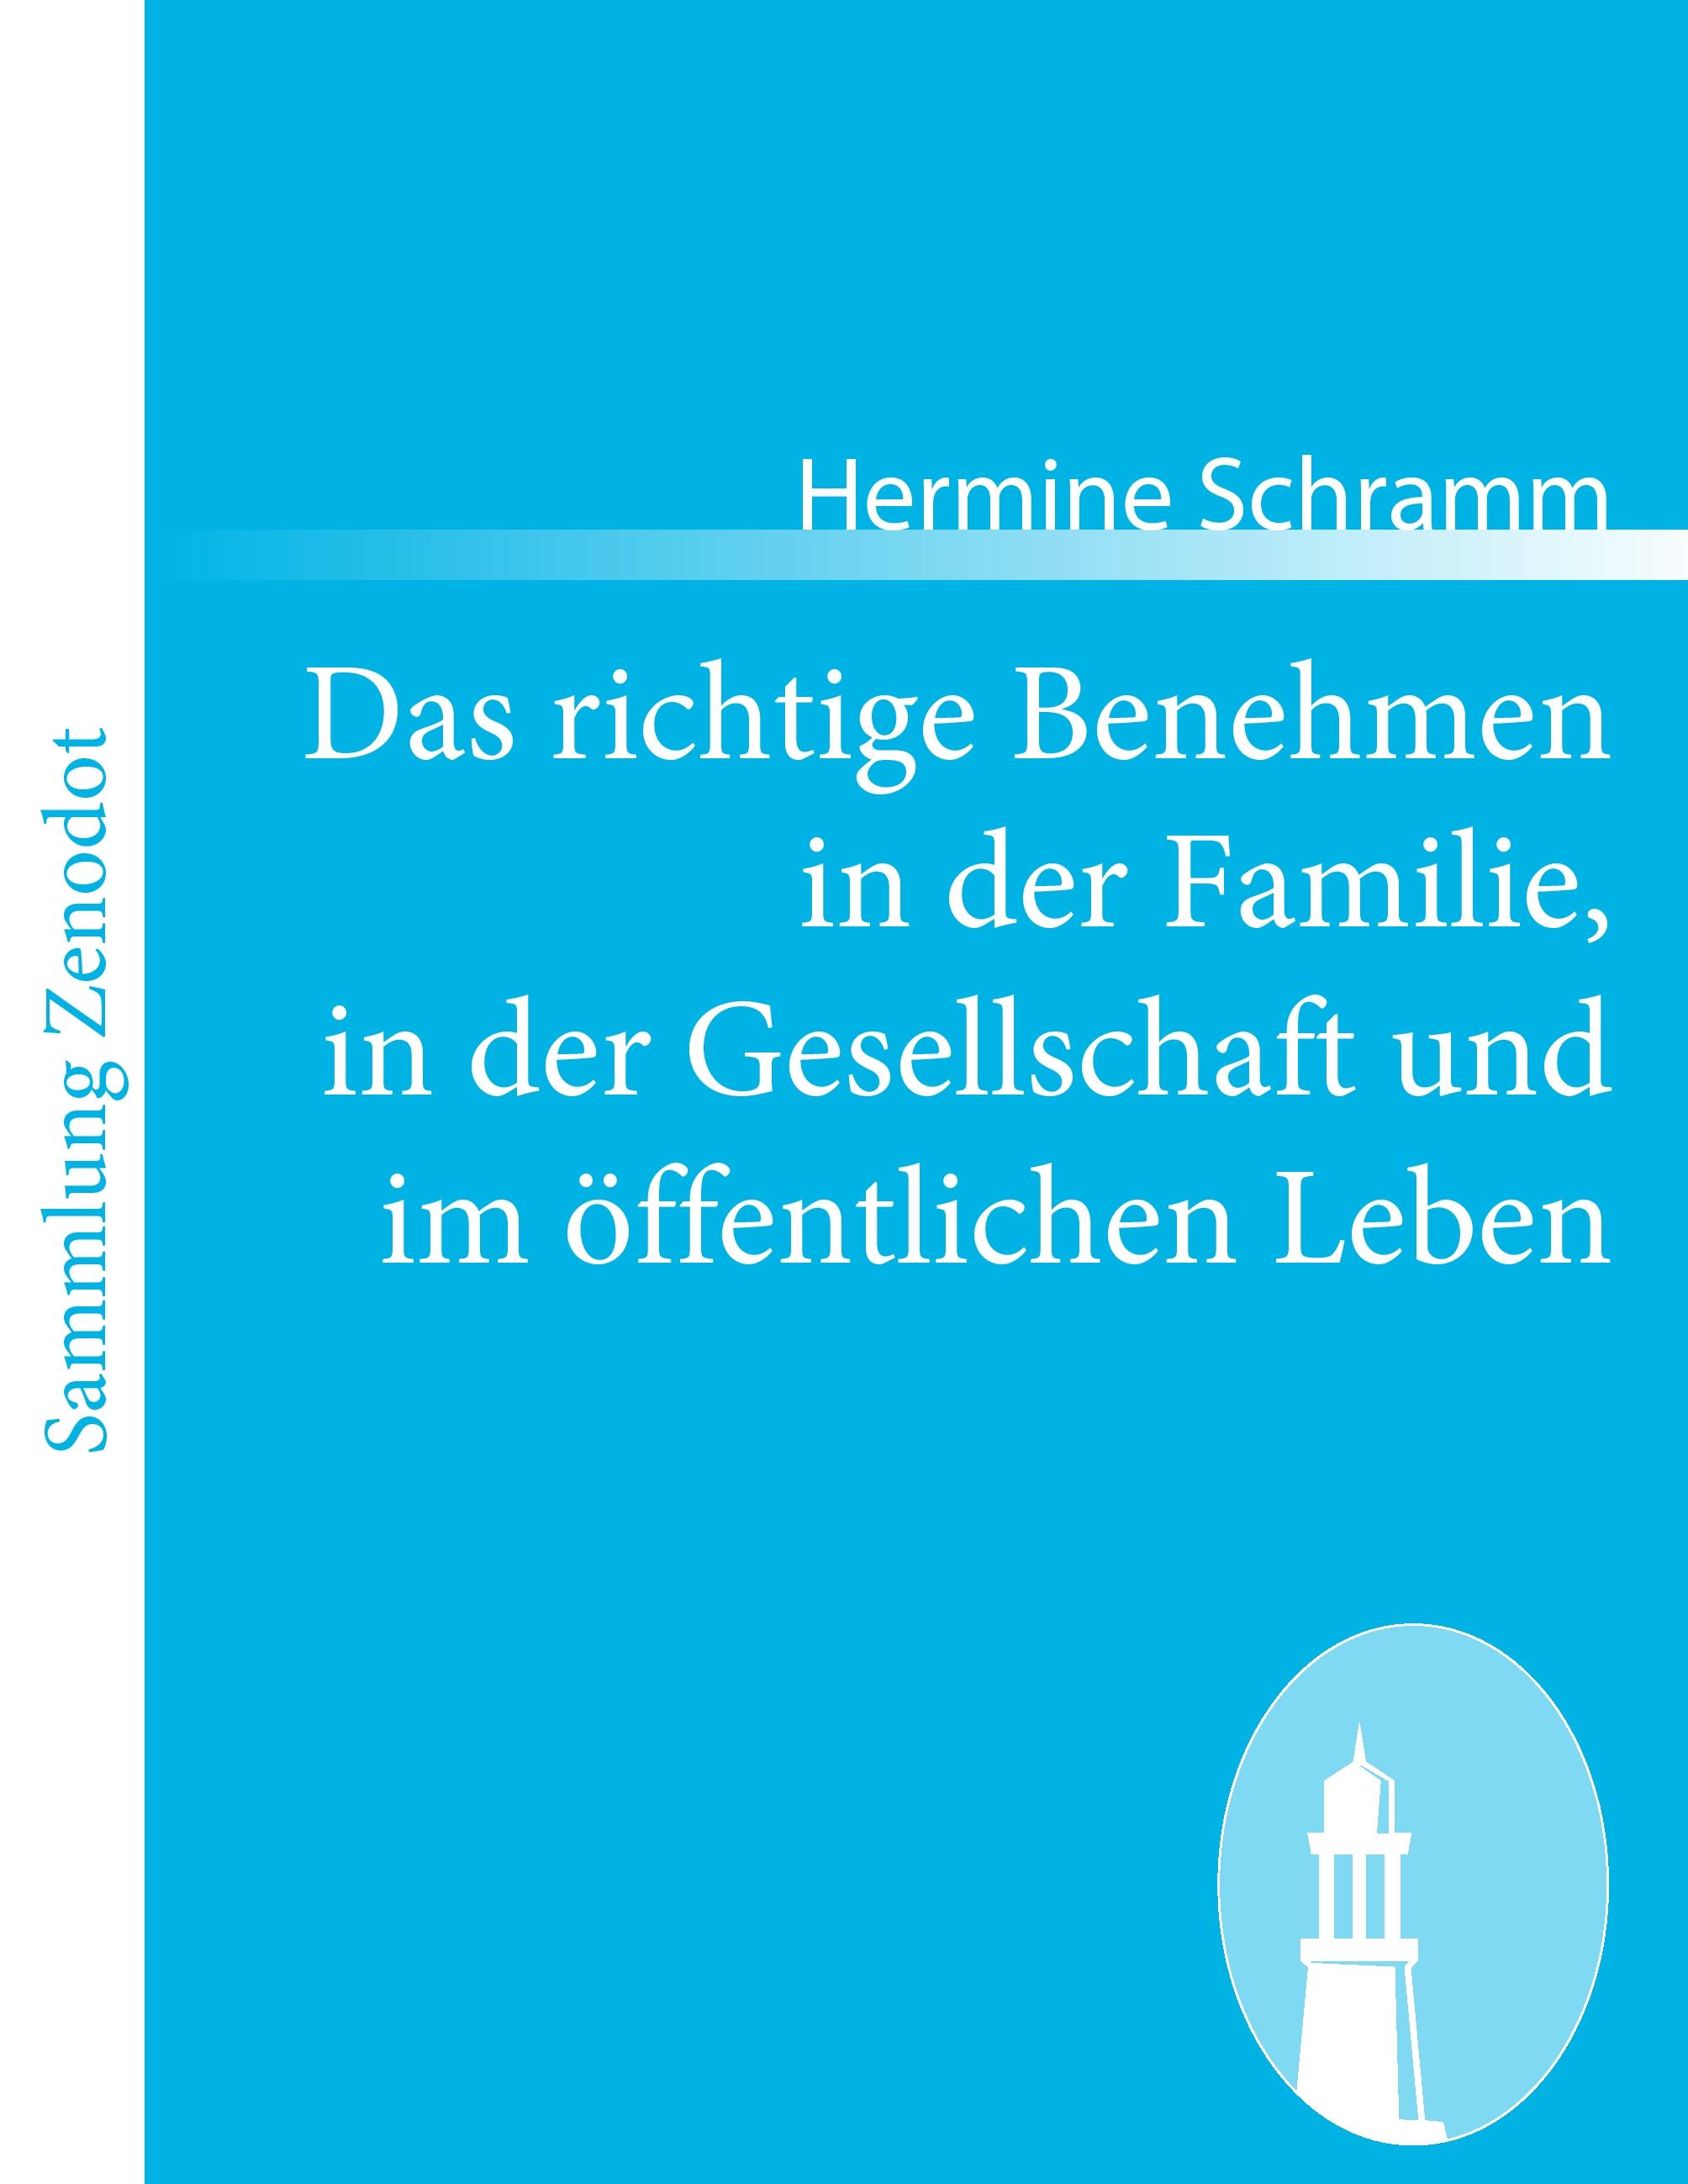 Das richtige Benehmen in der Familie, in der Gesellschaft und im öffentlichen Leben  Hermine Schramm  Taschenbuch  Paperback  Deutsch  2011 - Schramm, Hermine